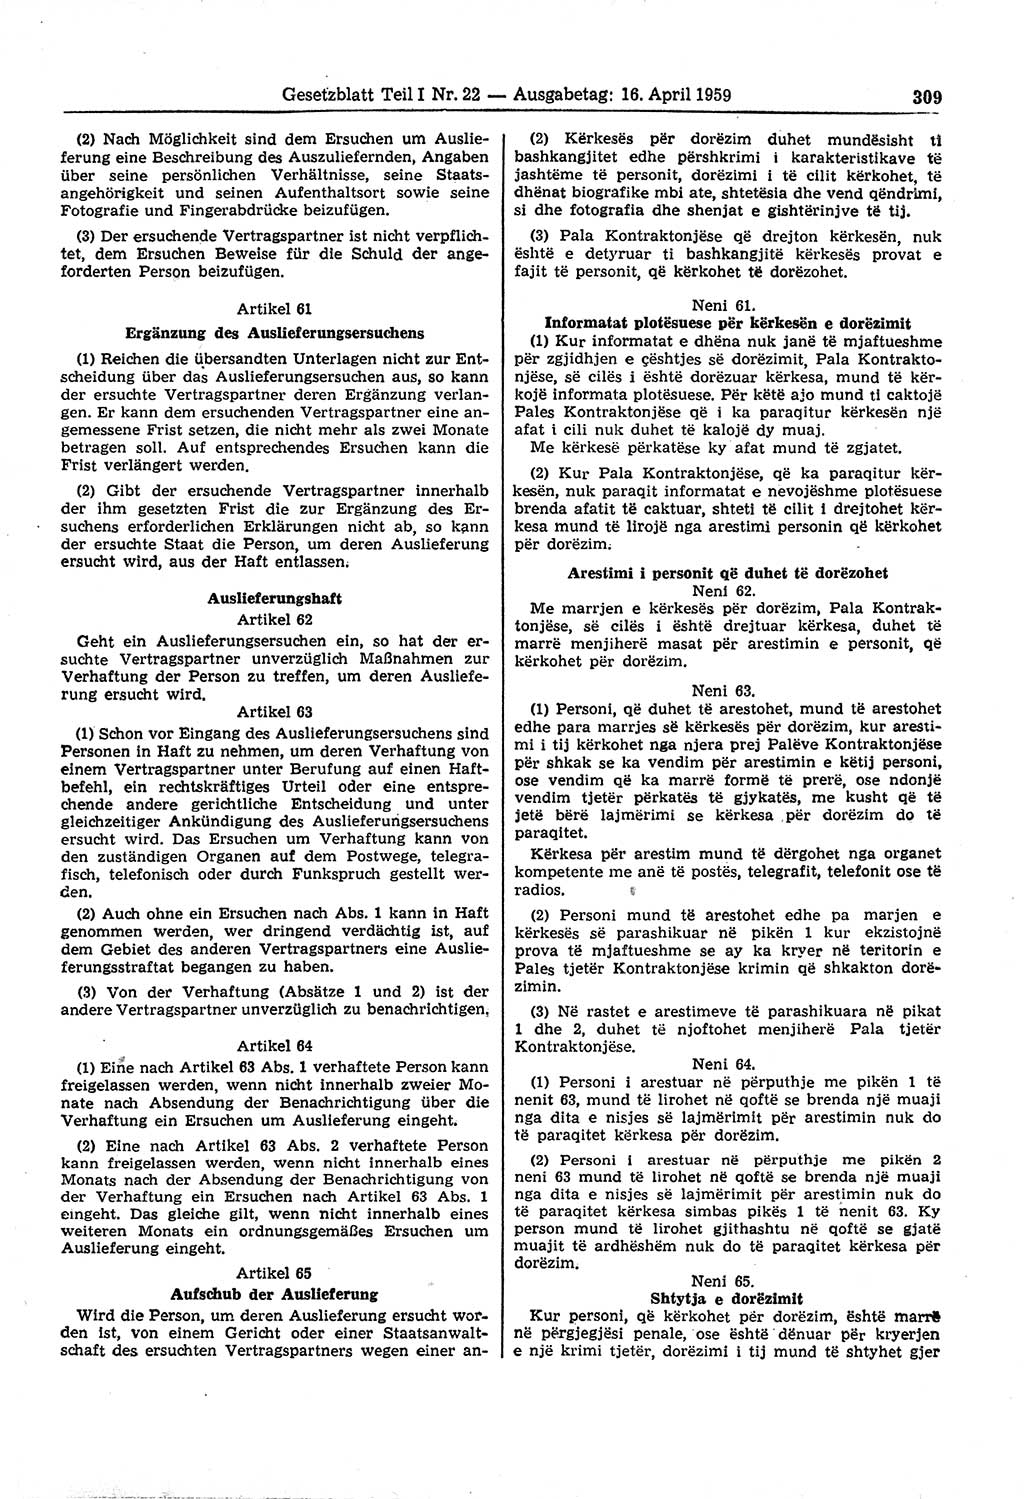 Gesetzblatt (GBl.) der Deutschen Demokratischen Republik (DDR) Teil Ⅰ 1959, Seite 309 (GBl. DDR Ⅰ 1959, S. 309)